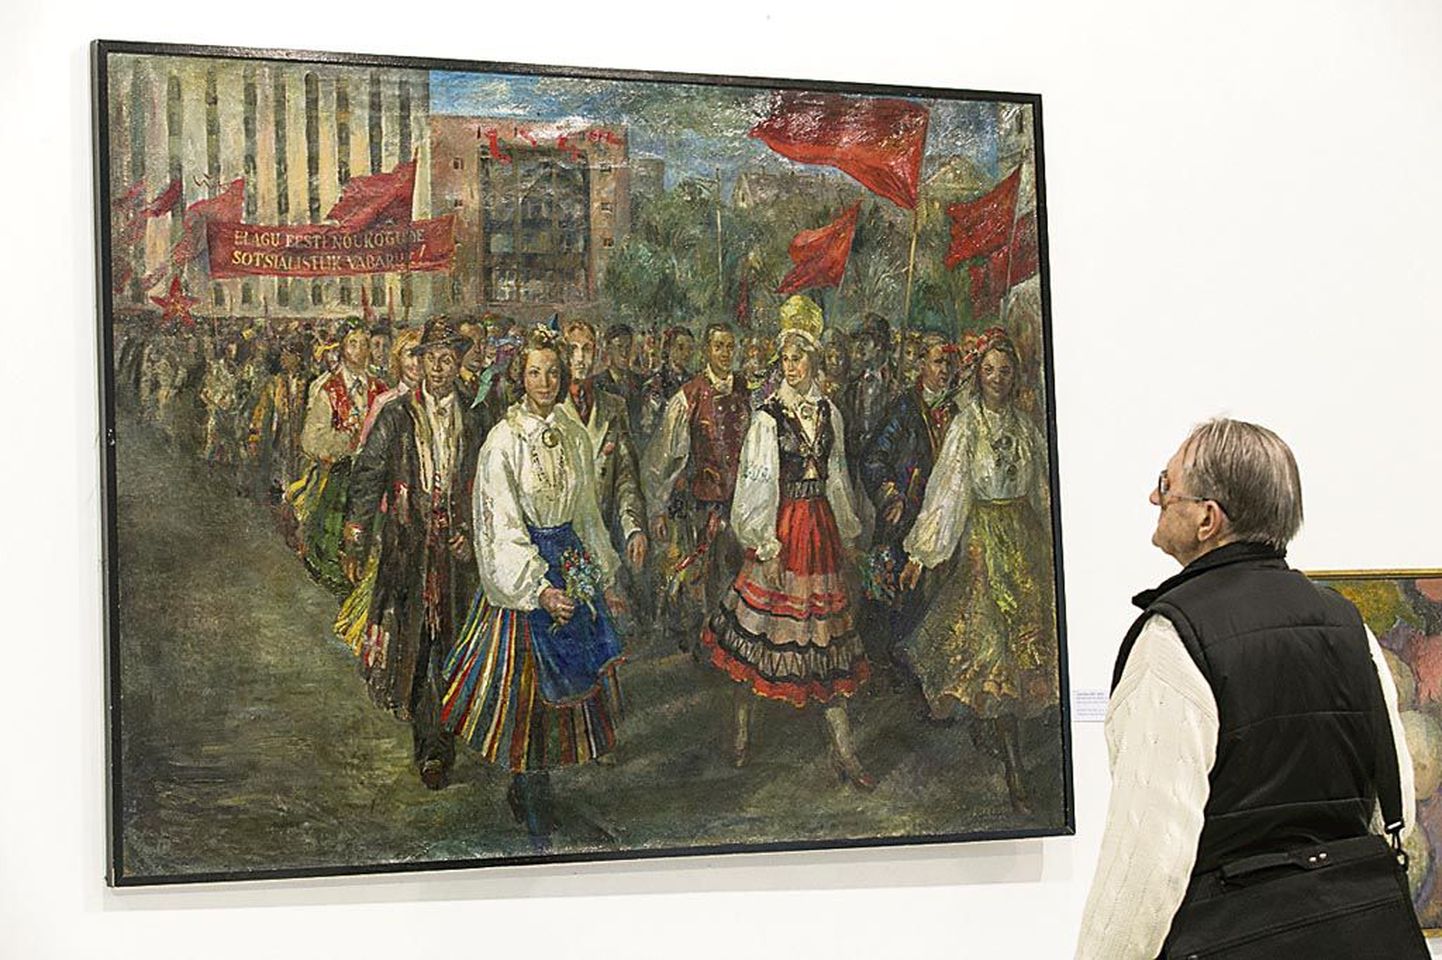 Hiljem pigem meisterliku aktimaalijana tuntud Evald Okase laulupeorongkäiku kujutav maal on üks näide nõukogude ajal kunstis valitsenud sotsrealismist.